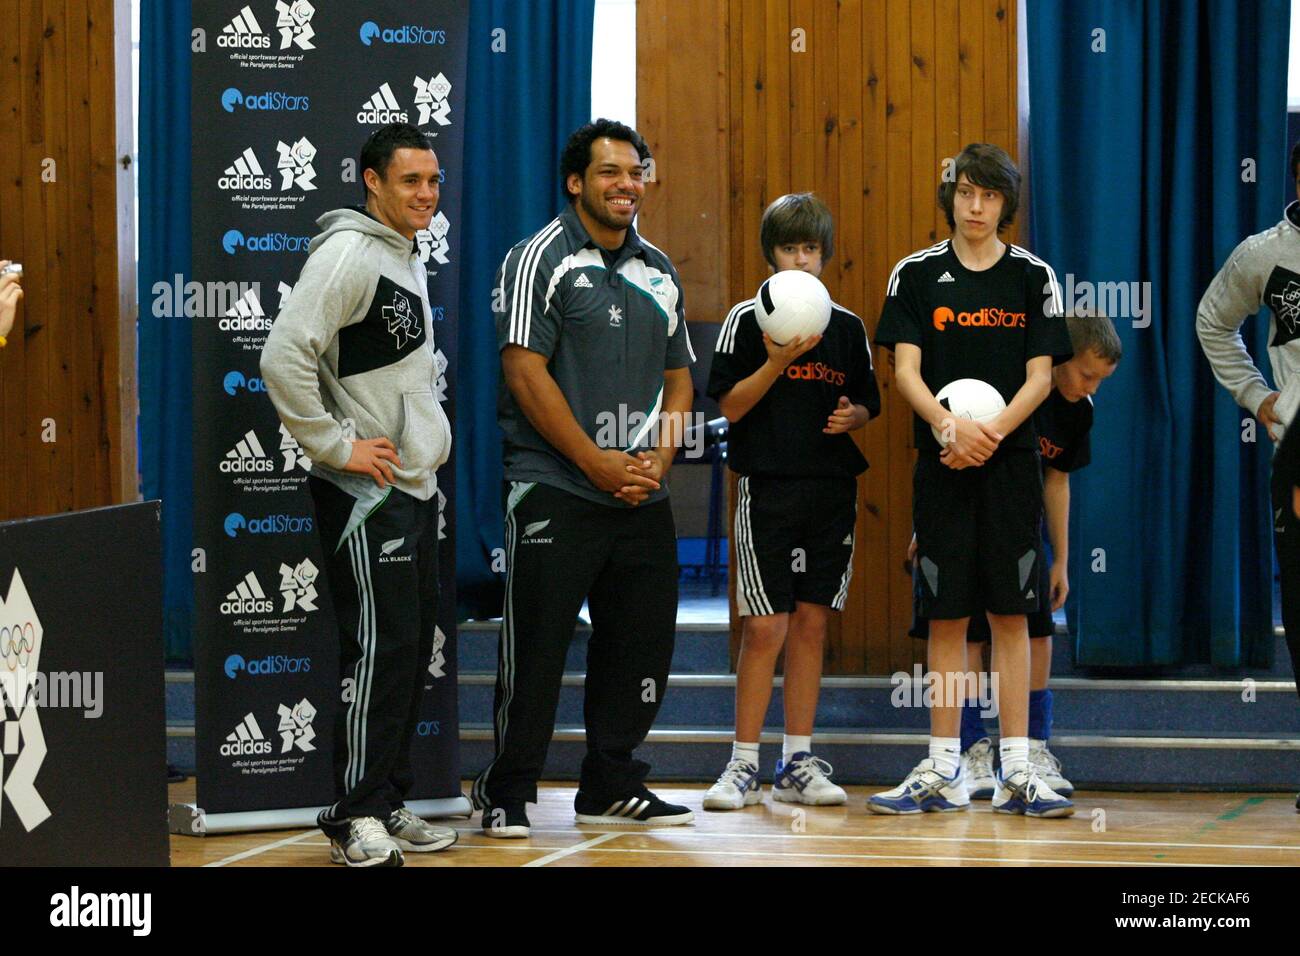 Rugby Union - Nueva Zelanda Adidas 'adiStar' visita escolar, Edimburgo,  Escocia - 12/11/10 Dan Carter y